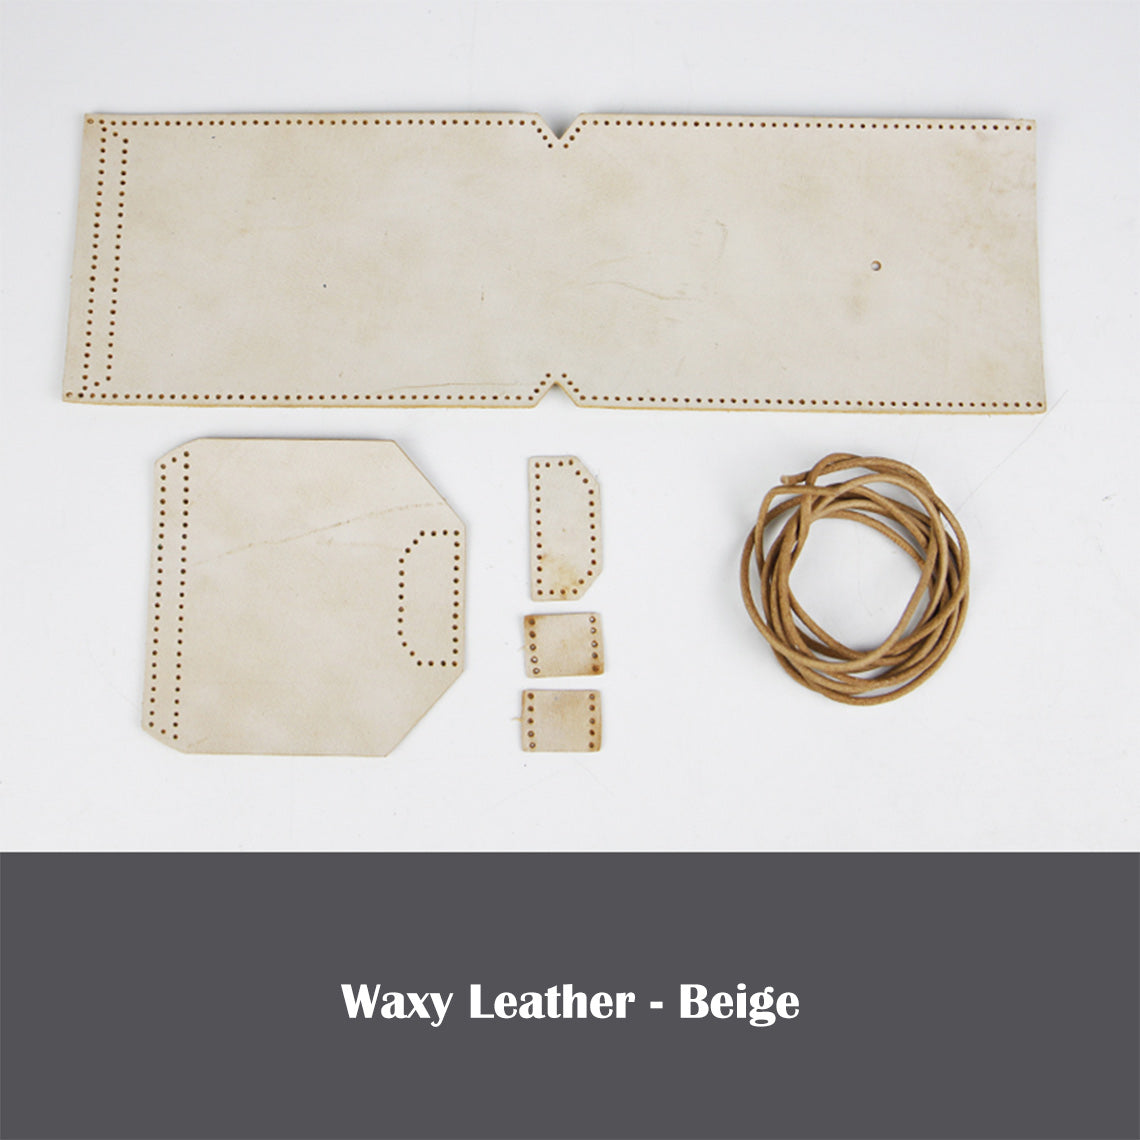 Beige Leather Phone Bag Kit | DIY Bag Kits - POPSEWING®